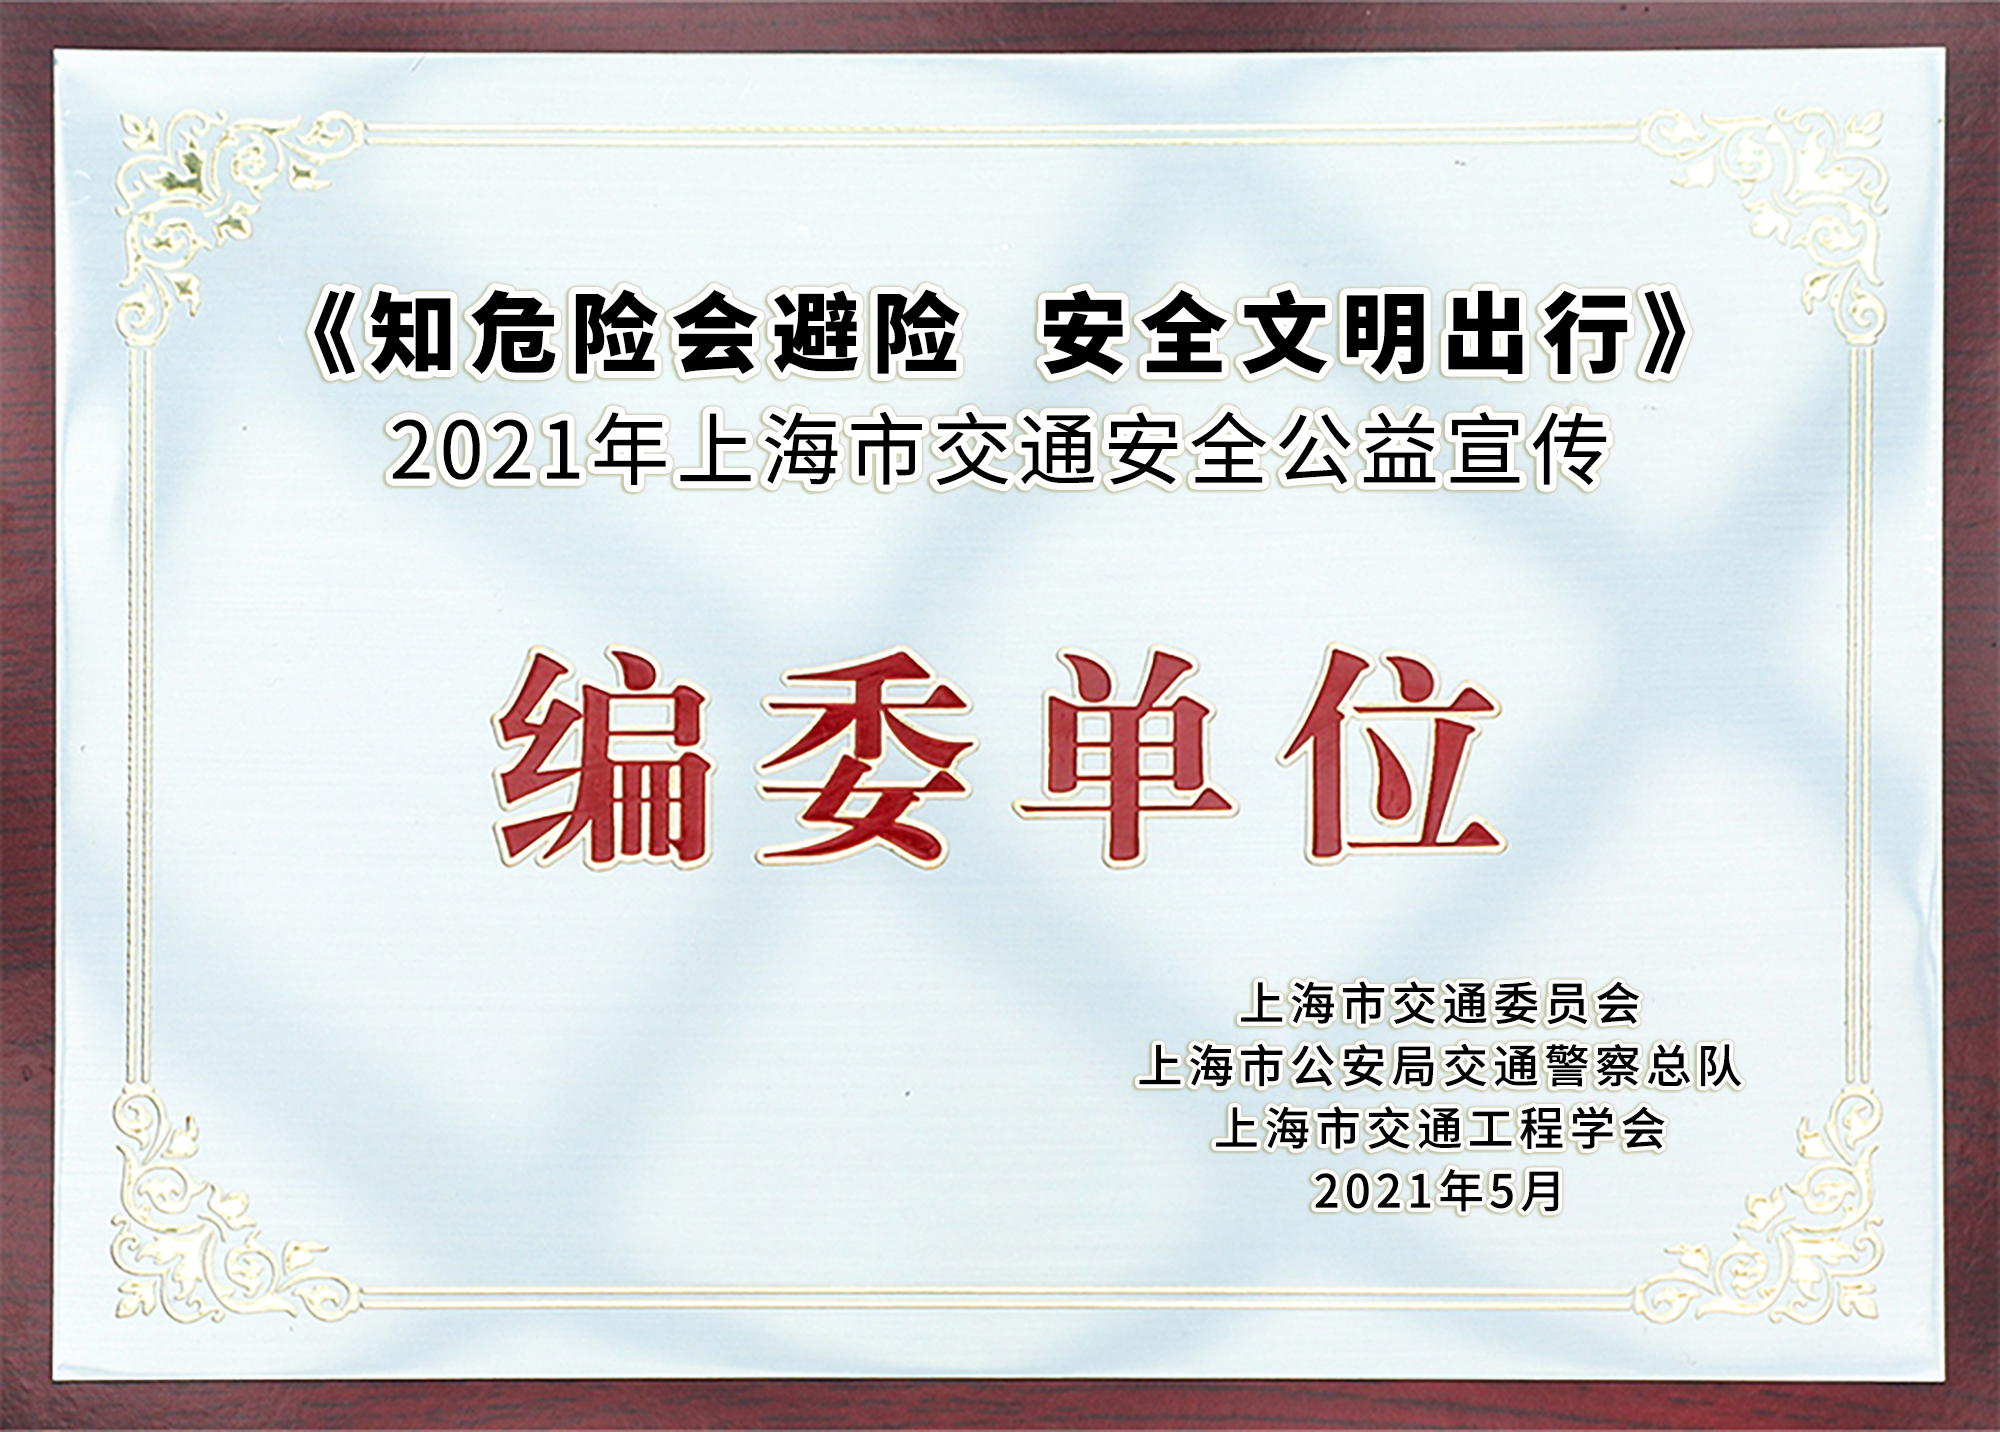 奇瑞捷豹路虎获2021年上海市交通安全公益宣传编委单位奖牌